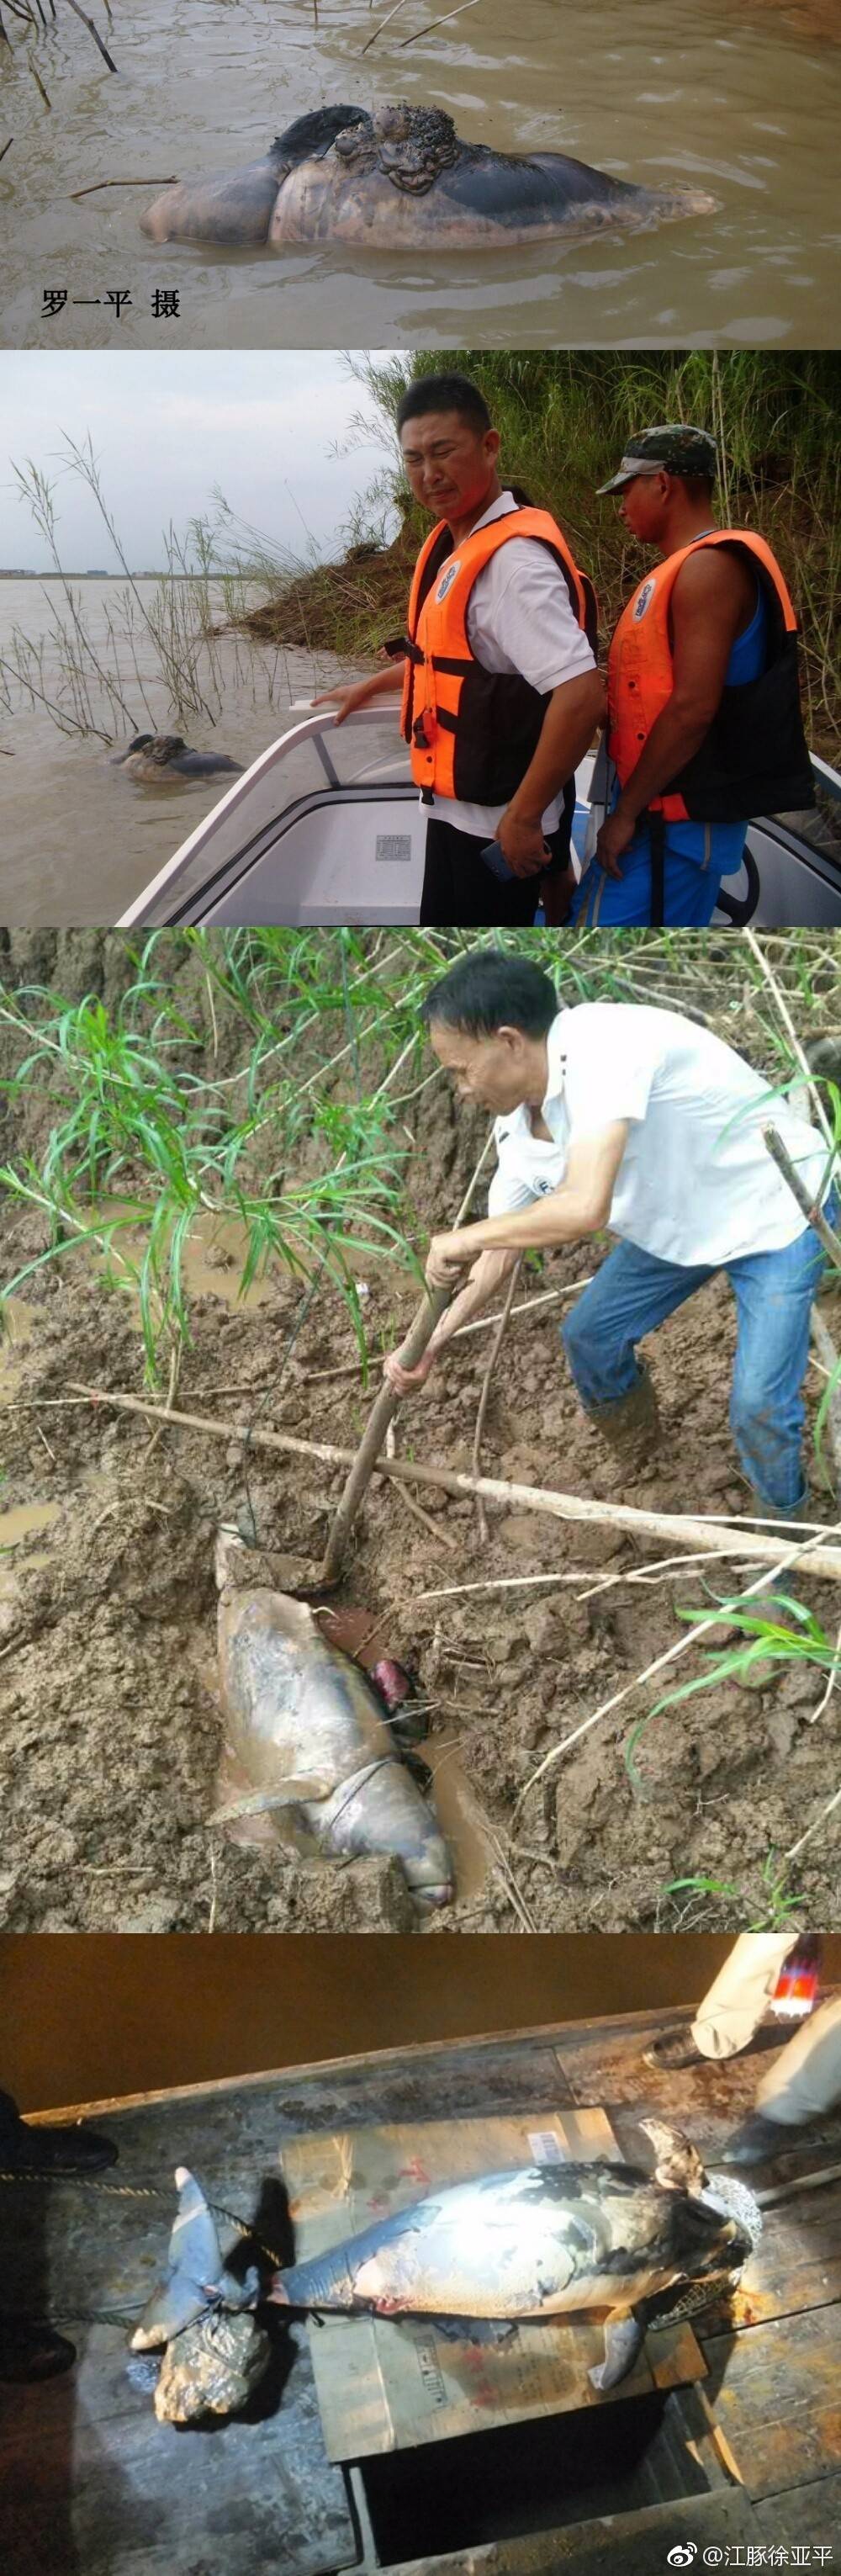 罗一平和县渔政局鹿角渔政站长罗漫辉等到达现场,发现1头已高度腐烂的